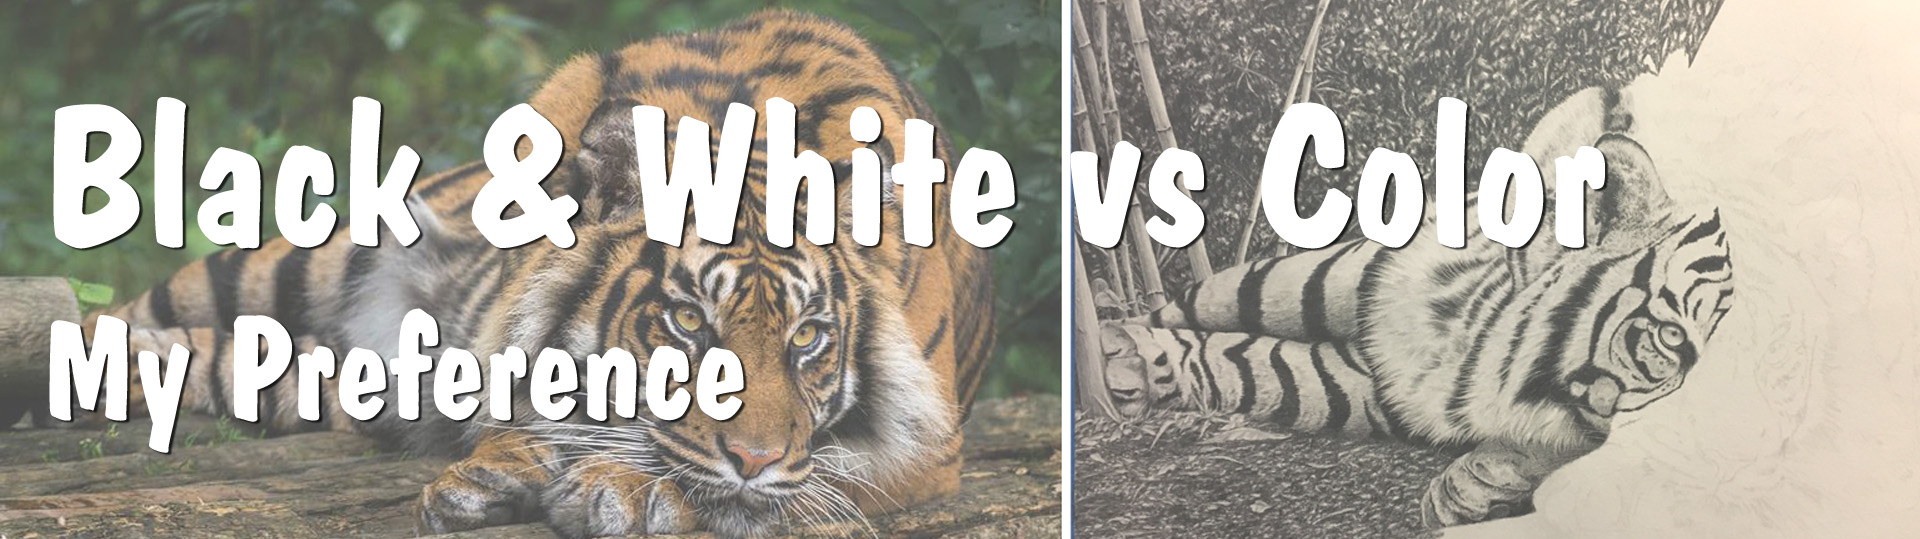 Black and White vs Color